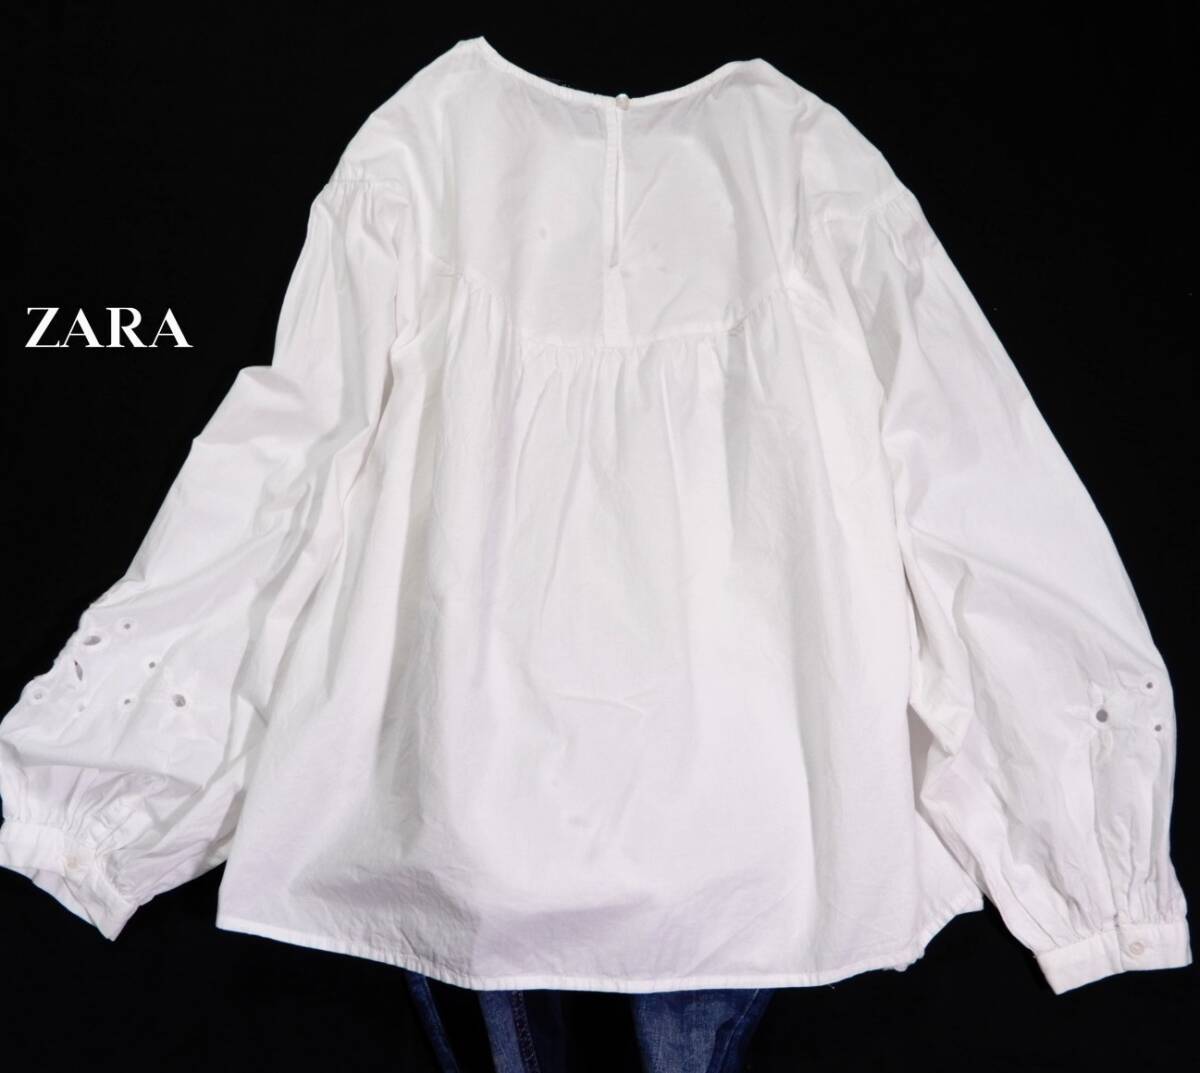 ザラ ZARA 大人可愛い☆ コットン カットワーク刺繍 パンチングレース デザインプルオーバーブラウス Sの画像2